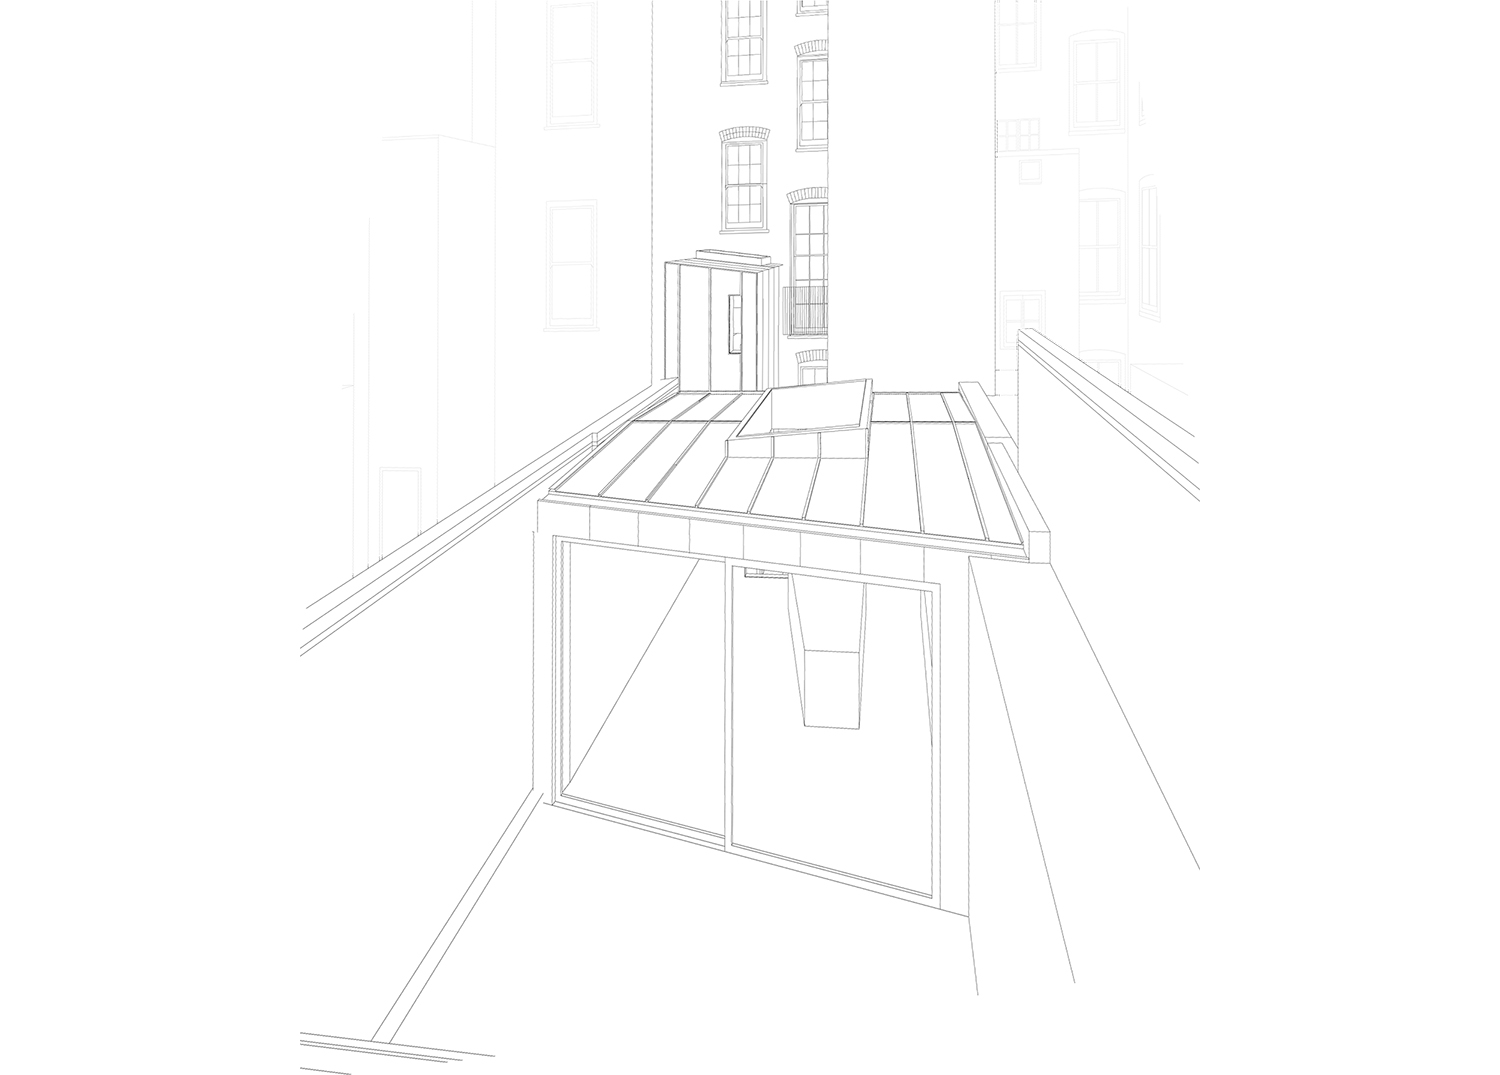 Prewett Bizley Architects - Lincolns Inn Town House -  3D view.jpg